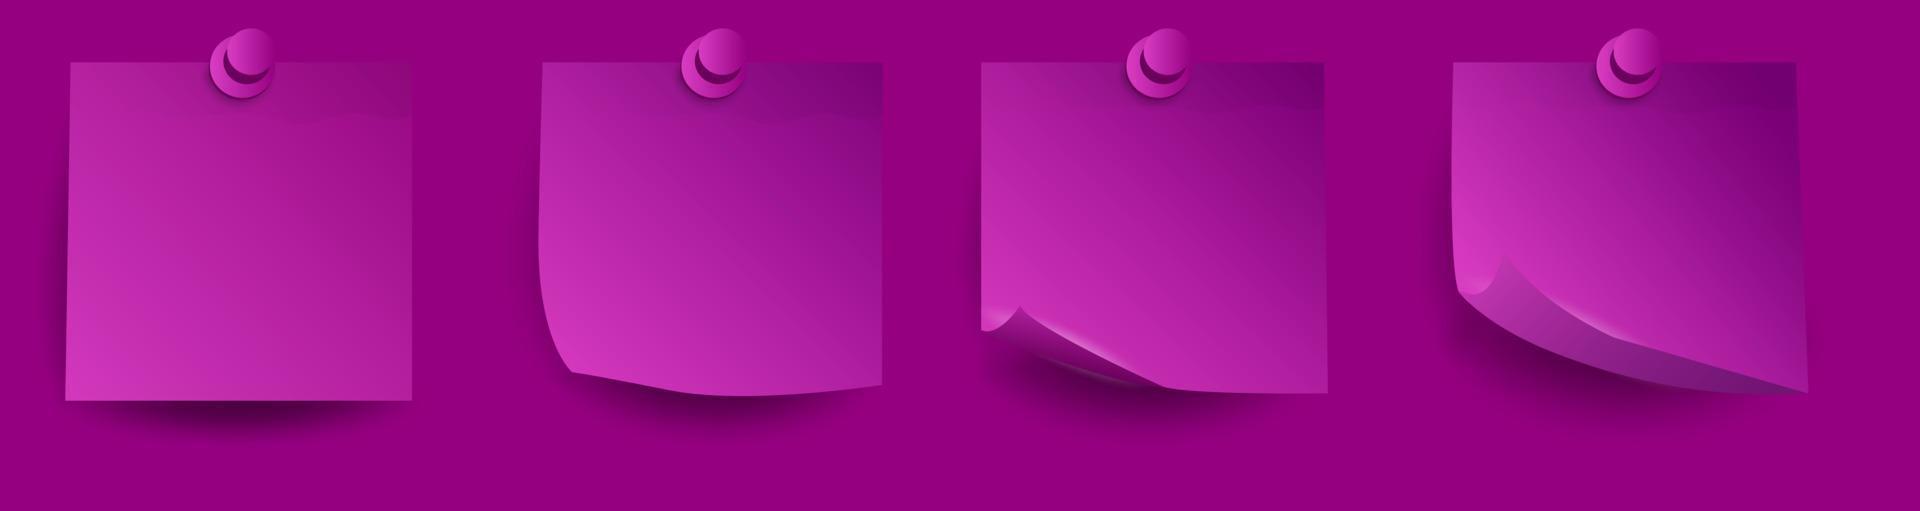 conjunto de pegatinas de papel 3d violetas realistas con esquinas rizadas y sombras vector